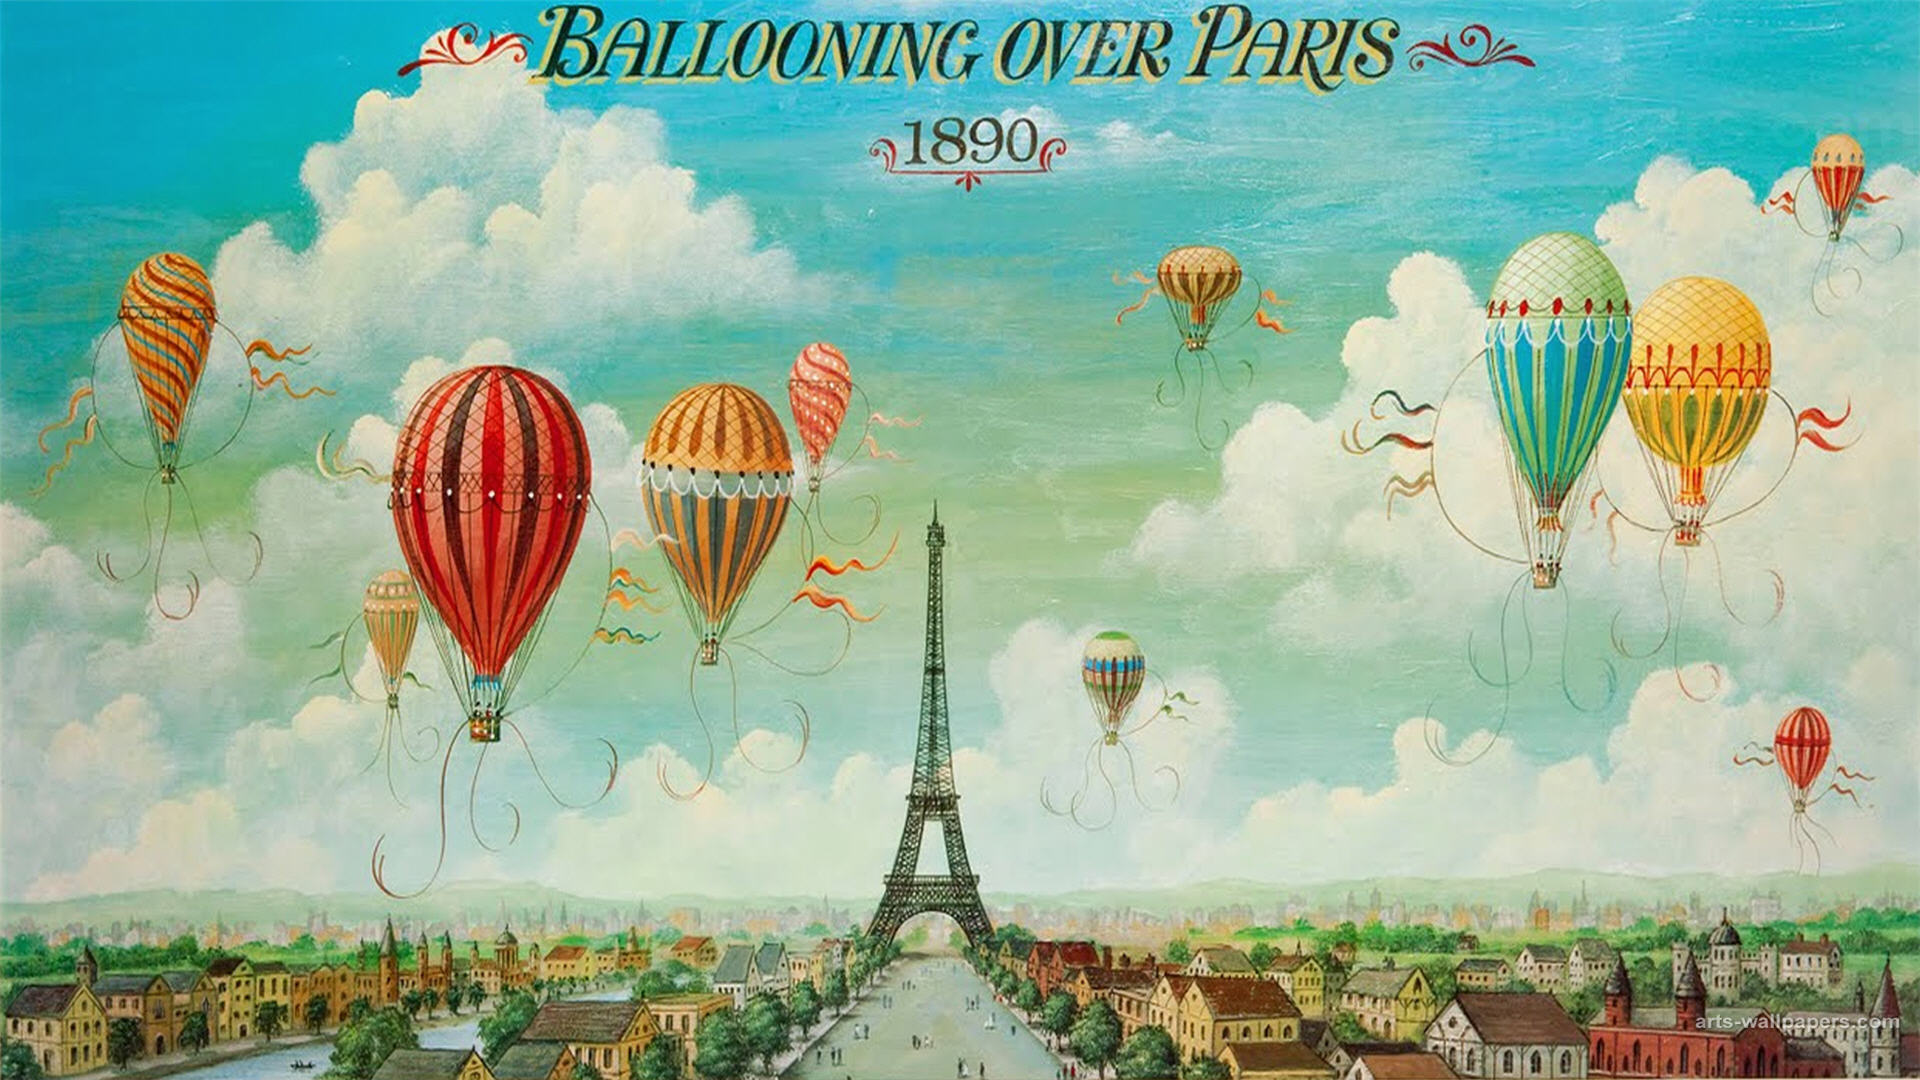 Wallpaper Murals7 - Ballooning Over Paris Canvas , HD Wallpaper & Backgrounds